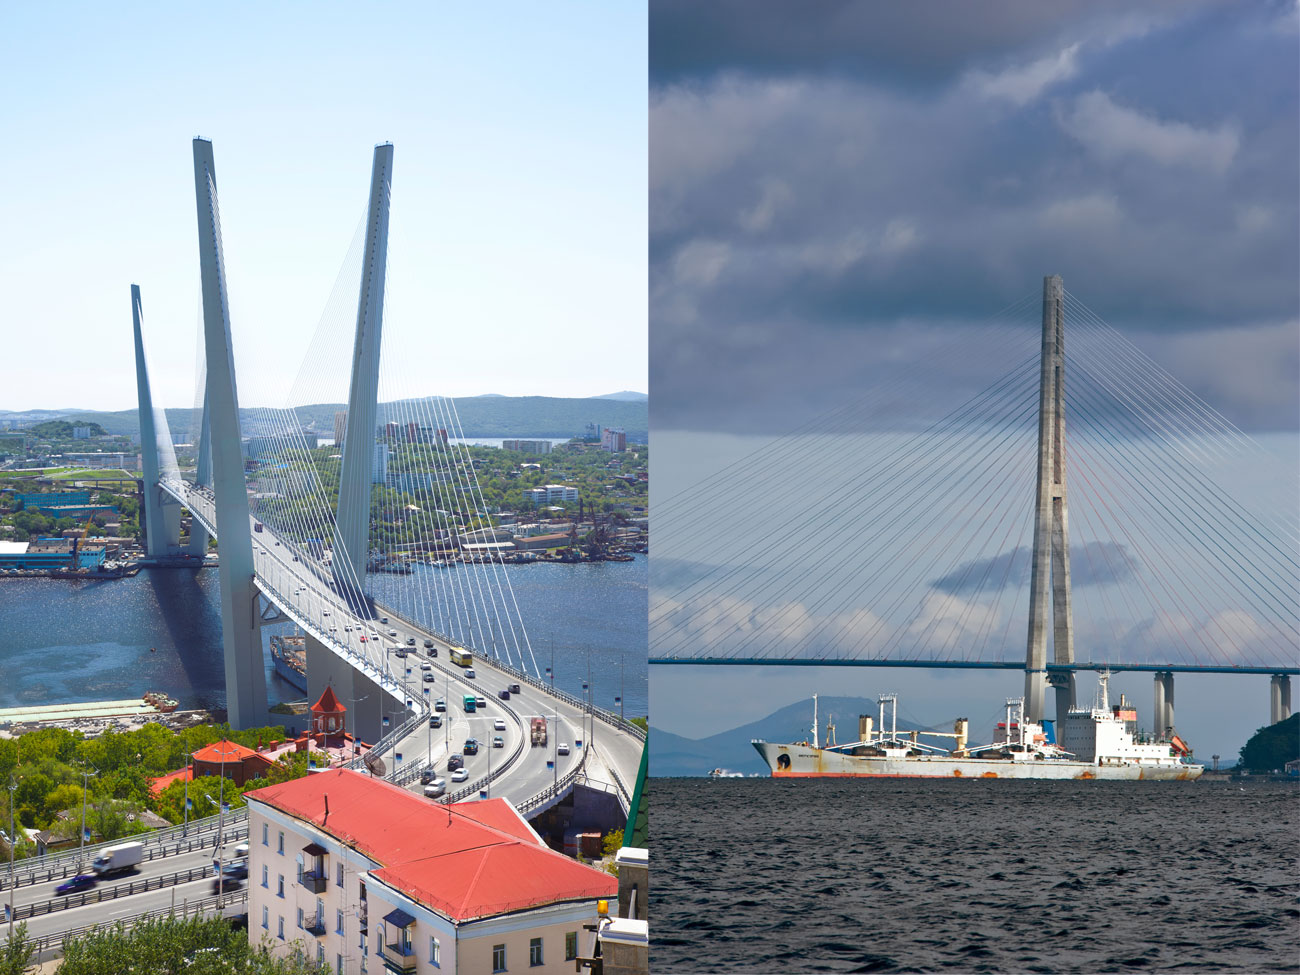 Die beiden endgültigen Gewinner werden nach einer weiteren Online-Befragung im September feststehen. // Wladiwostok – Russlands Vorposten am Pazifik – fasziniert durch viele Inseln und Brücken.